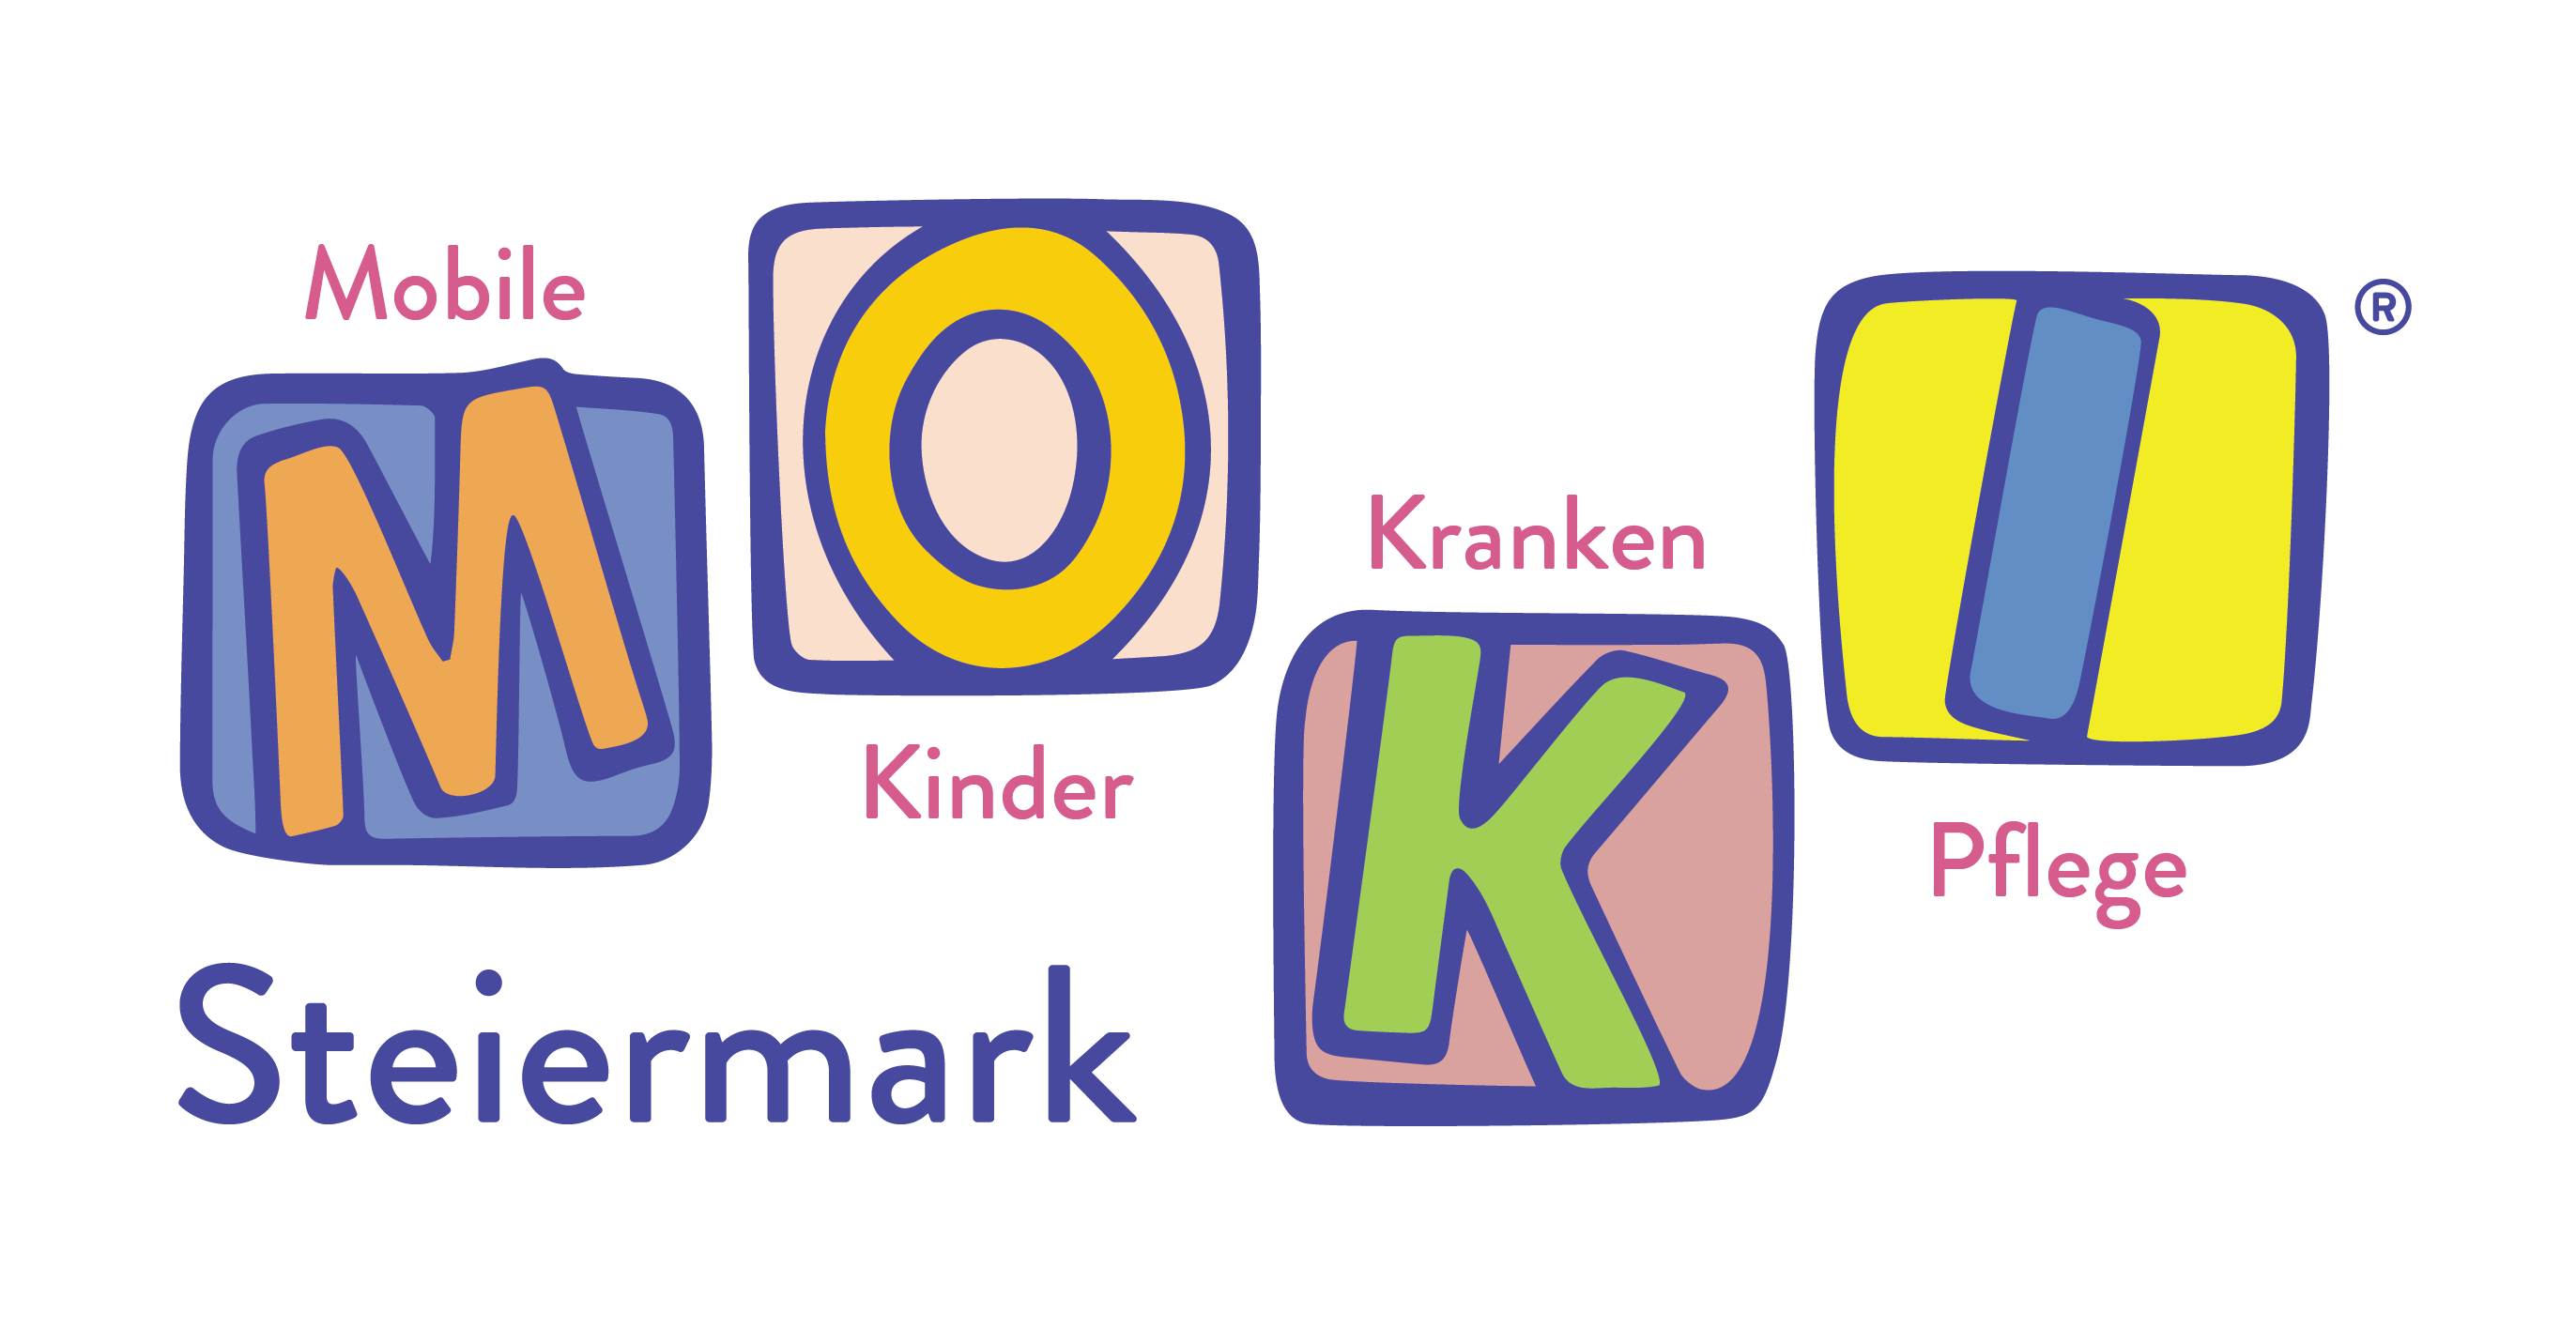 Mobile Kinderkrankenpflege Steiermark Logo